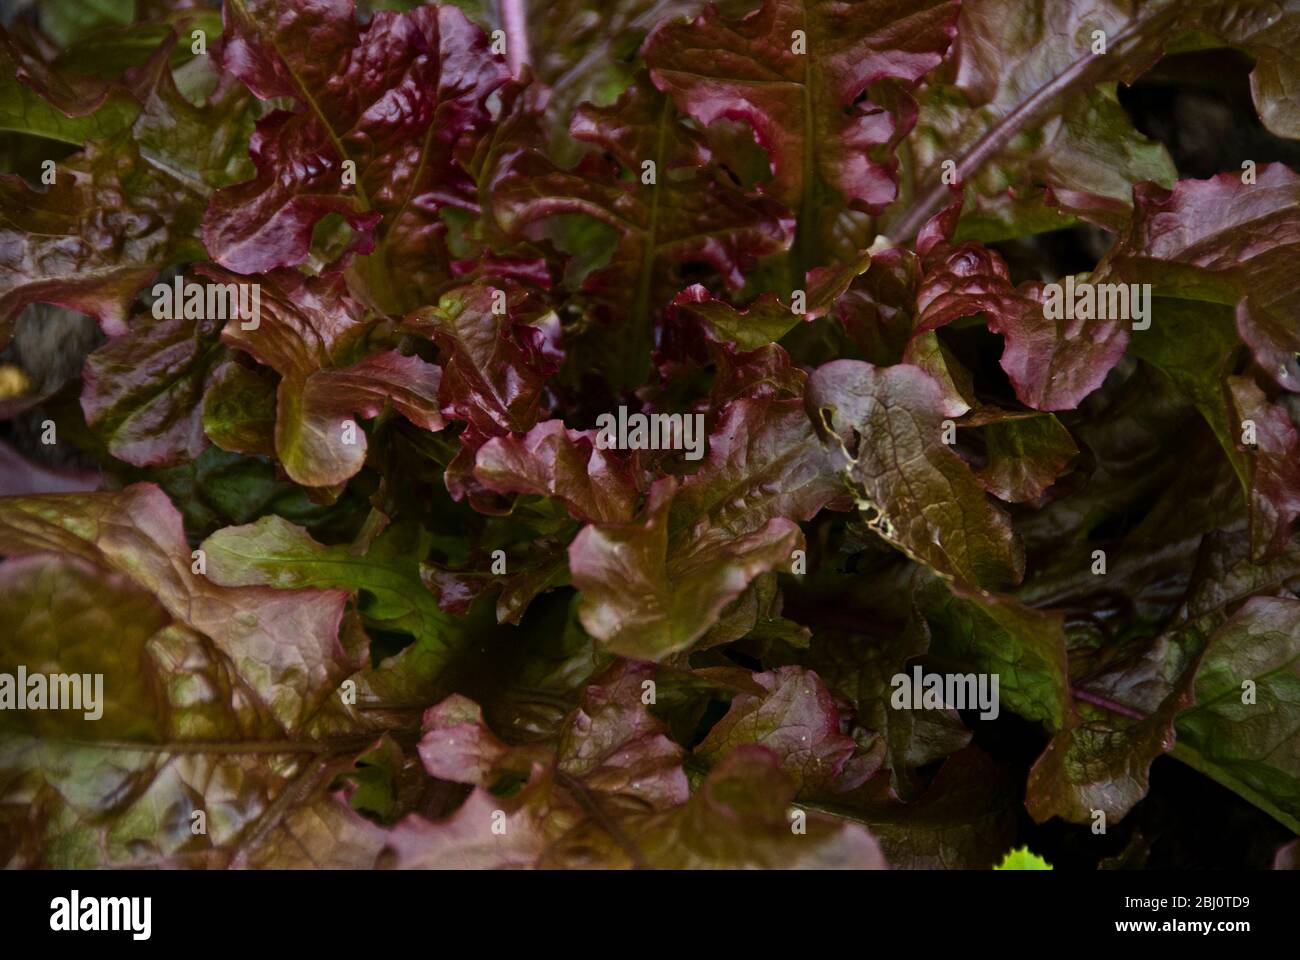 Oak leaf lettuce growing in garden - Stock Photo